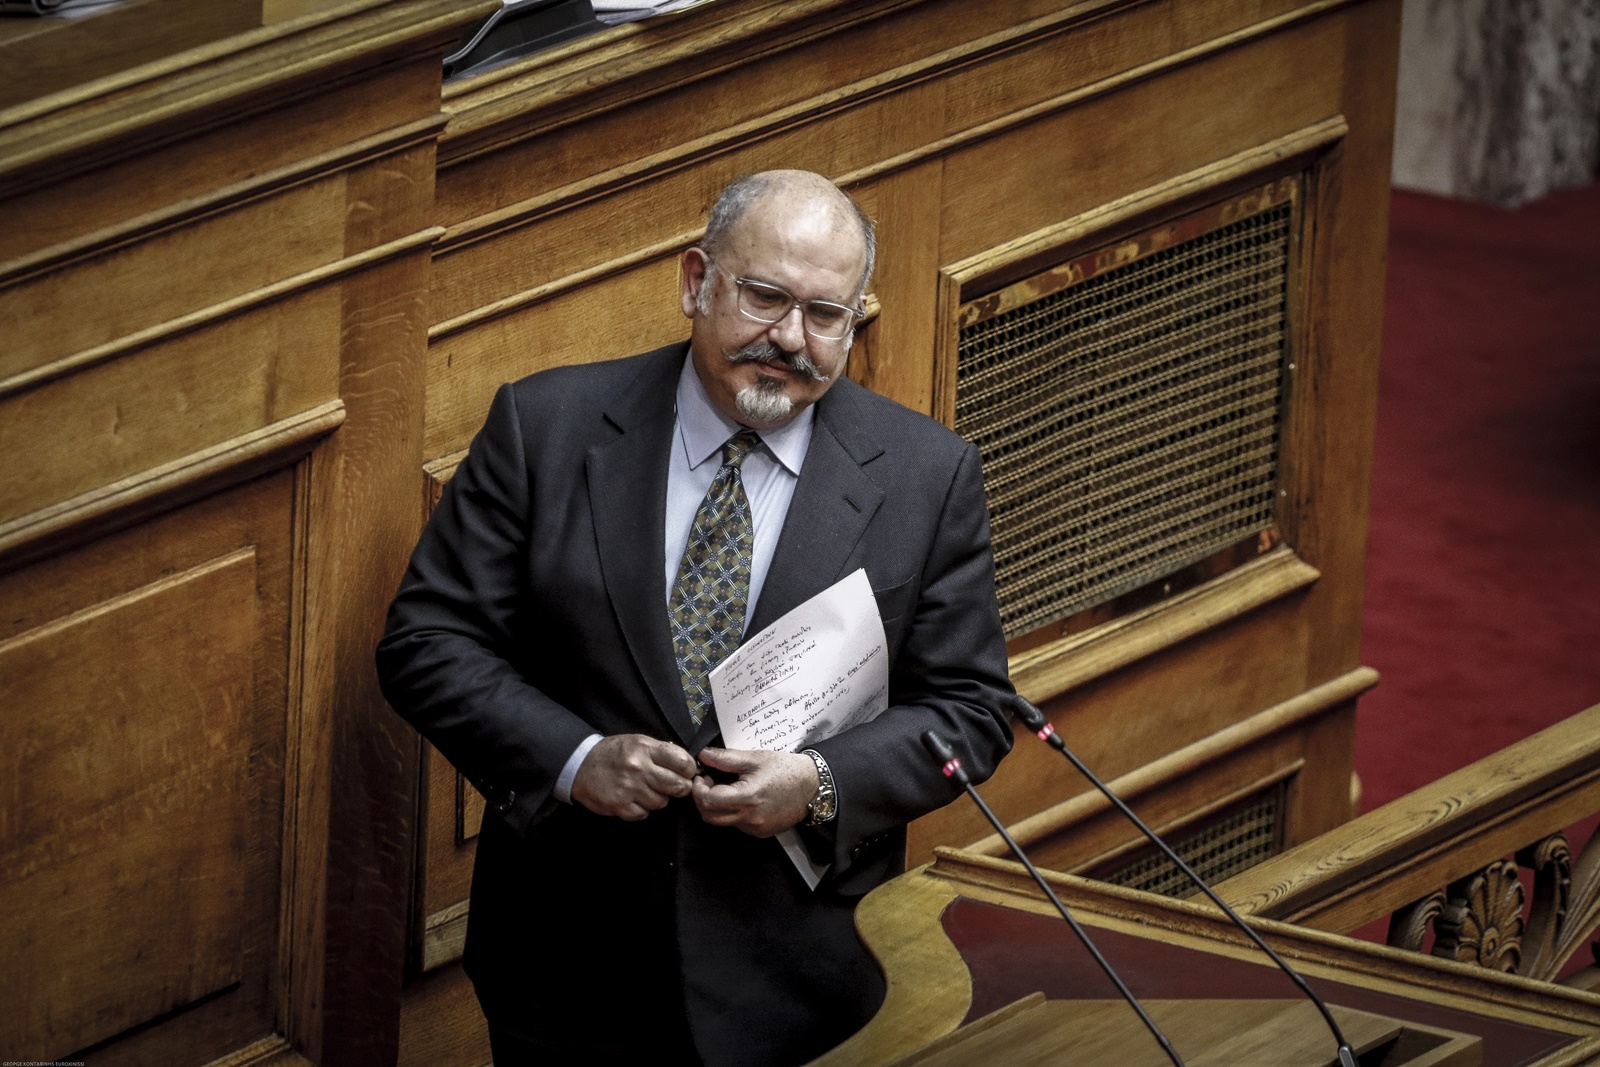 Ξυδάκης – σύνδρομο Στοκχόλμης: Δεν ανακαλεί ο πρώην υπουργός